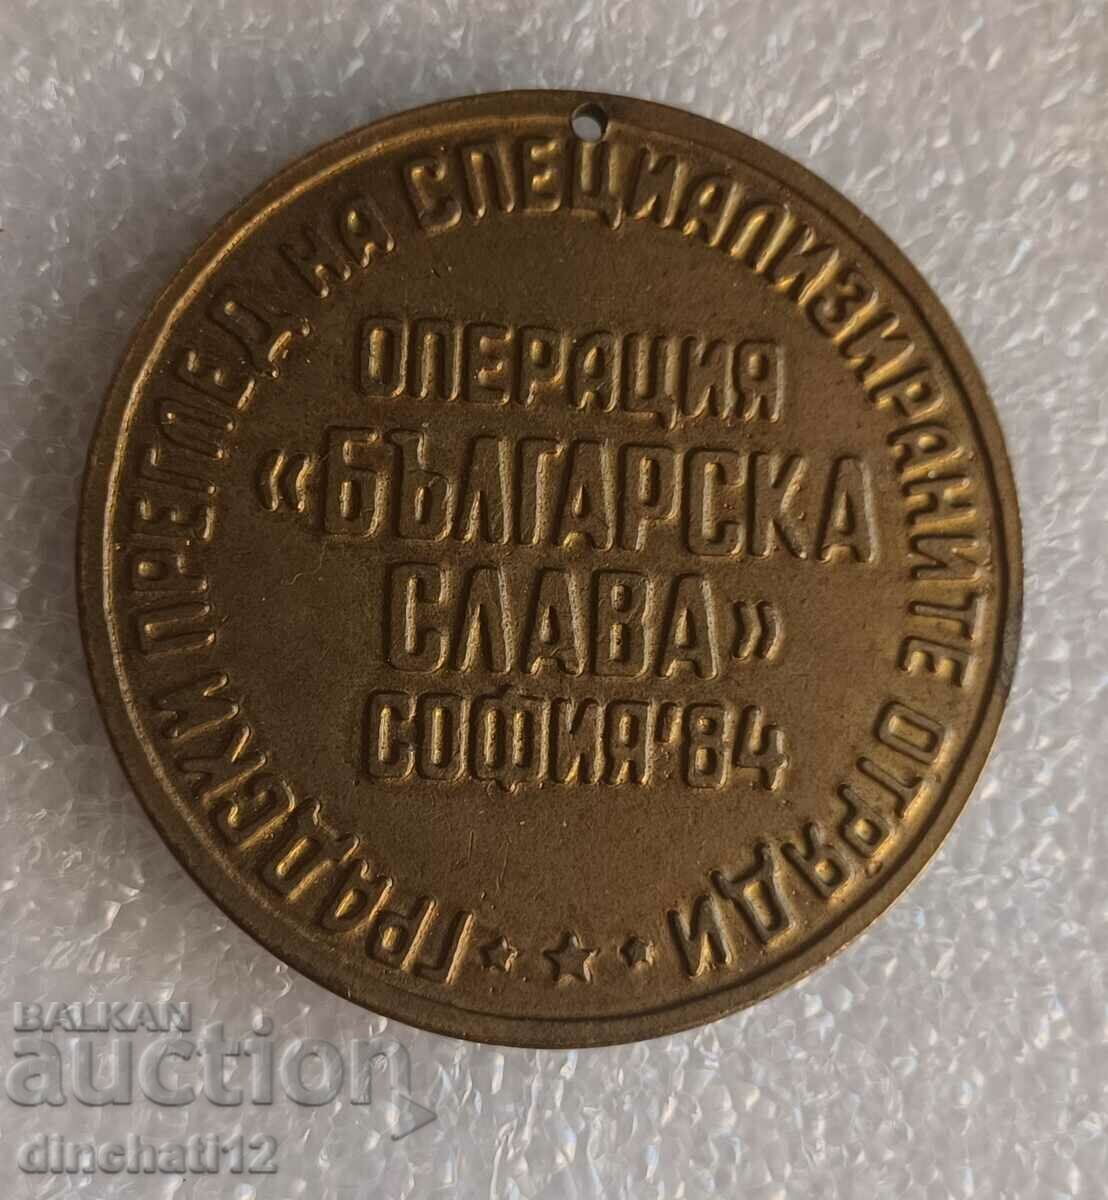 Medalia „Operațiunea Gloria Bulgariei” DKMS. DPO SEPTEMVRICHE